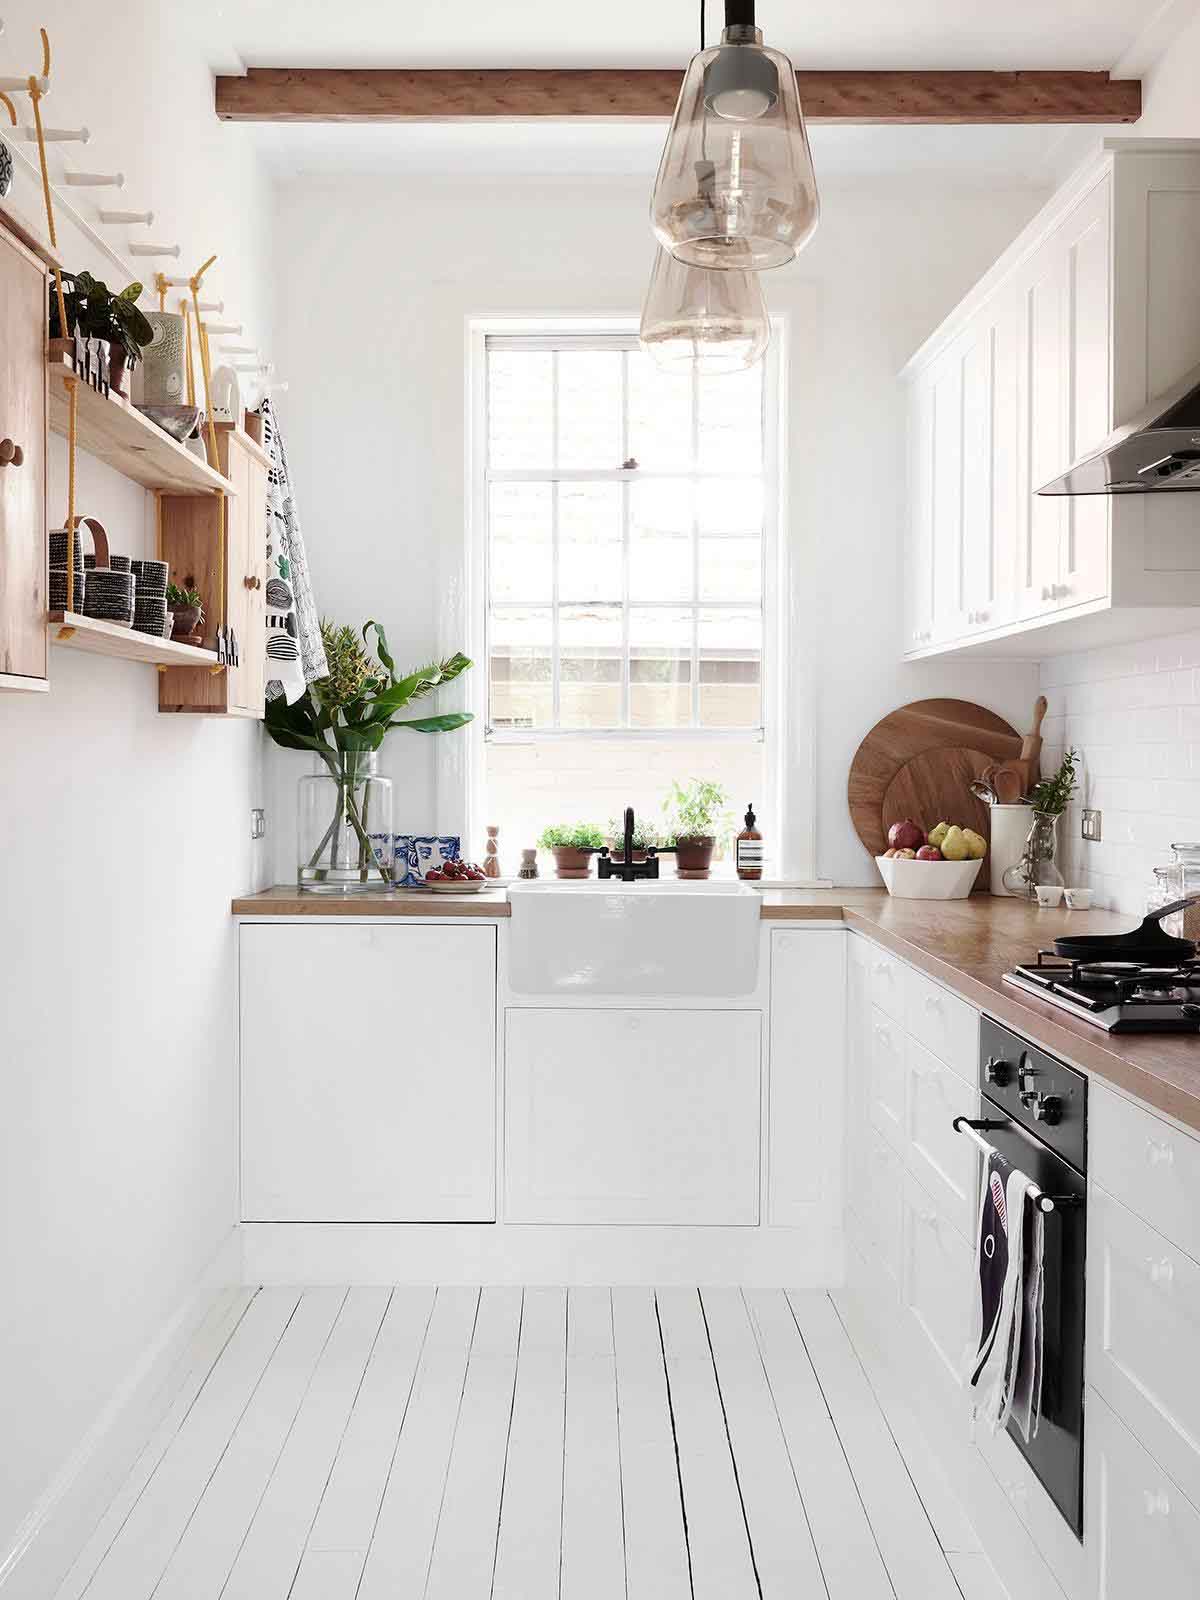 Bạn đang muốn tiết kiệm diện tích bếp một cách thông minh? Hãy tham khảo cách sắp xếp tủ và kệ bếp để tránh lãng phí không gian. Những ý tưởng sáng tạo chắc chắn sẽ giúp cho gian bếp của bạn gọn gàng hơn và vừa đẹp mắt lại vừa tiện dụng hơn.